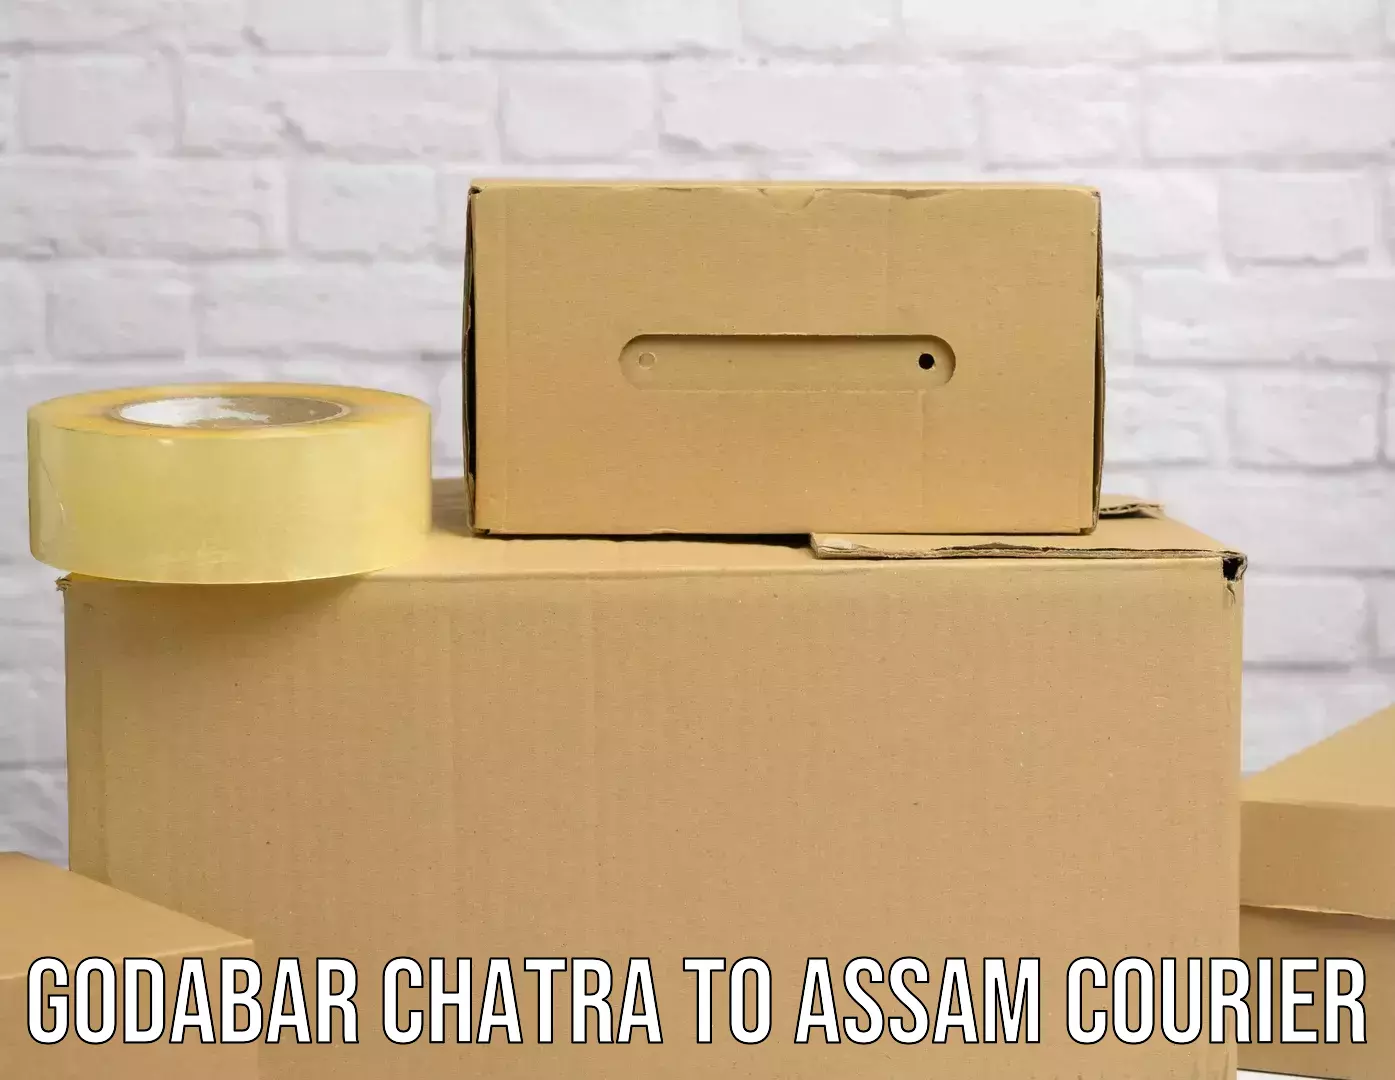 Digital courier platforms Godabar Chatra to Assam